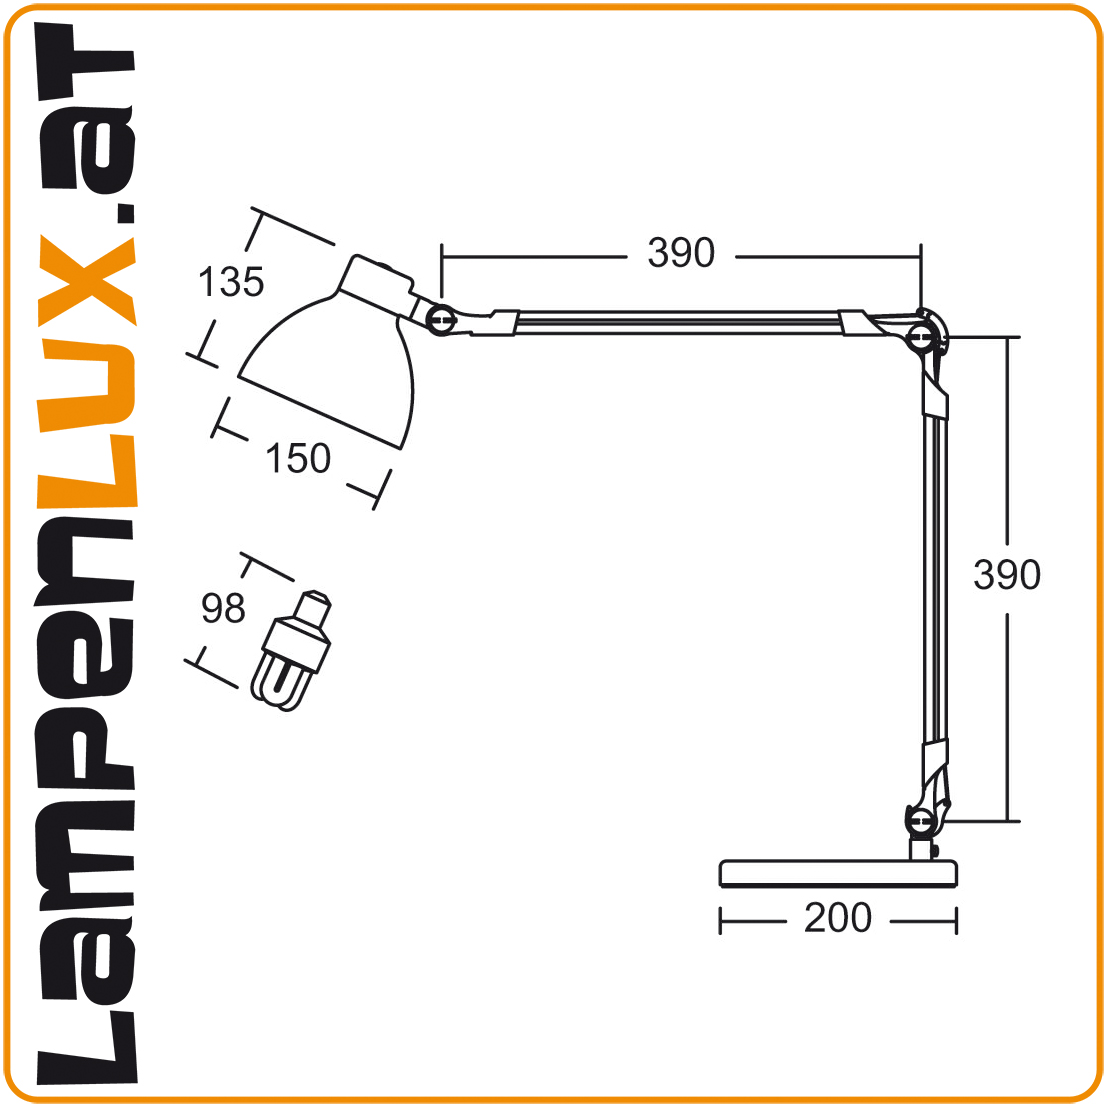 Lampenlux LED Tischlampe Tischleuchte Pana schwenkbar mit Schalter weiss E27 4W